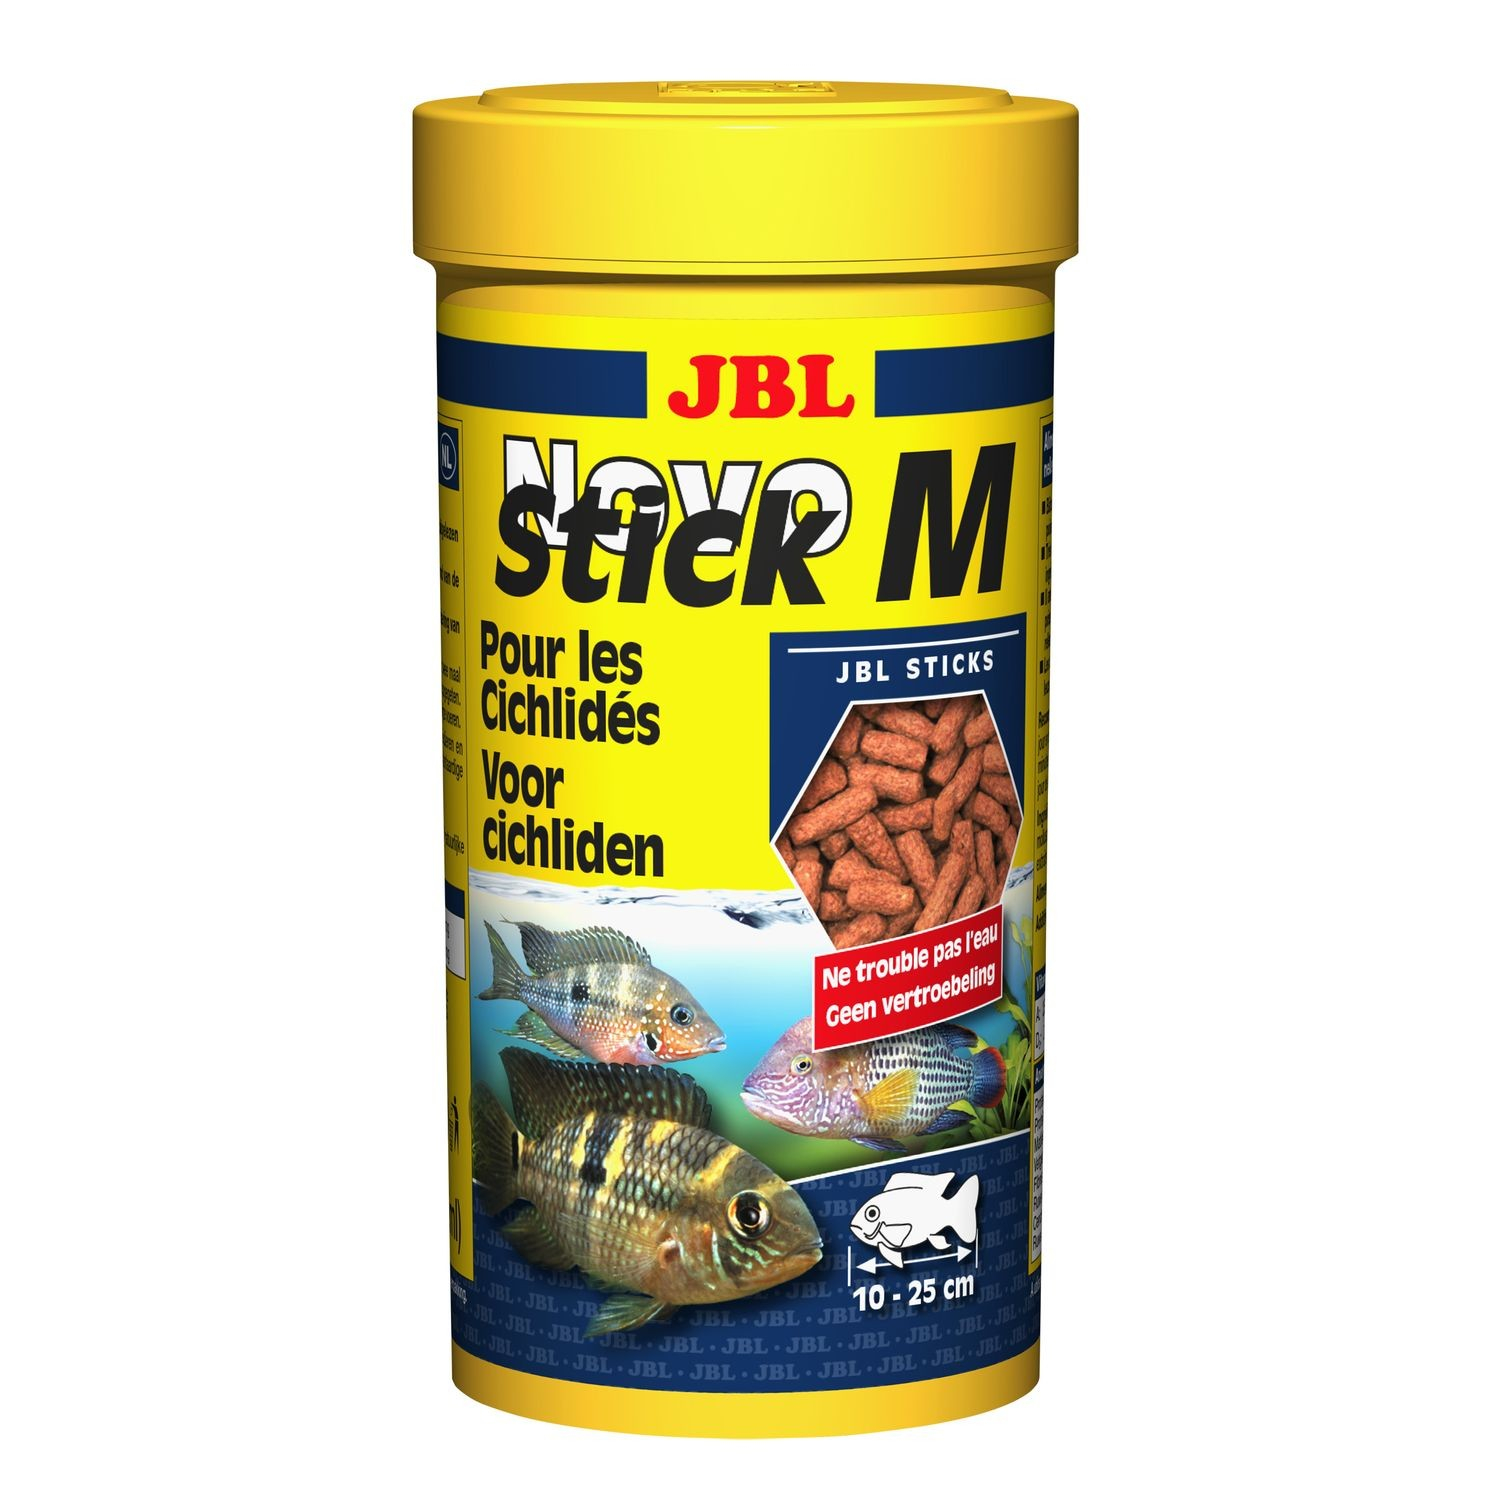 JBL NovoStick M voor cichliden